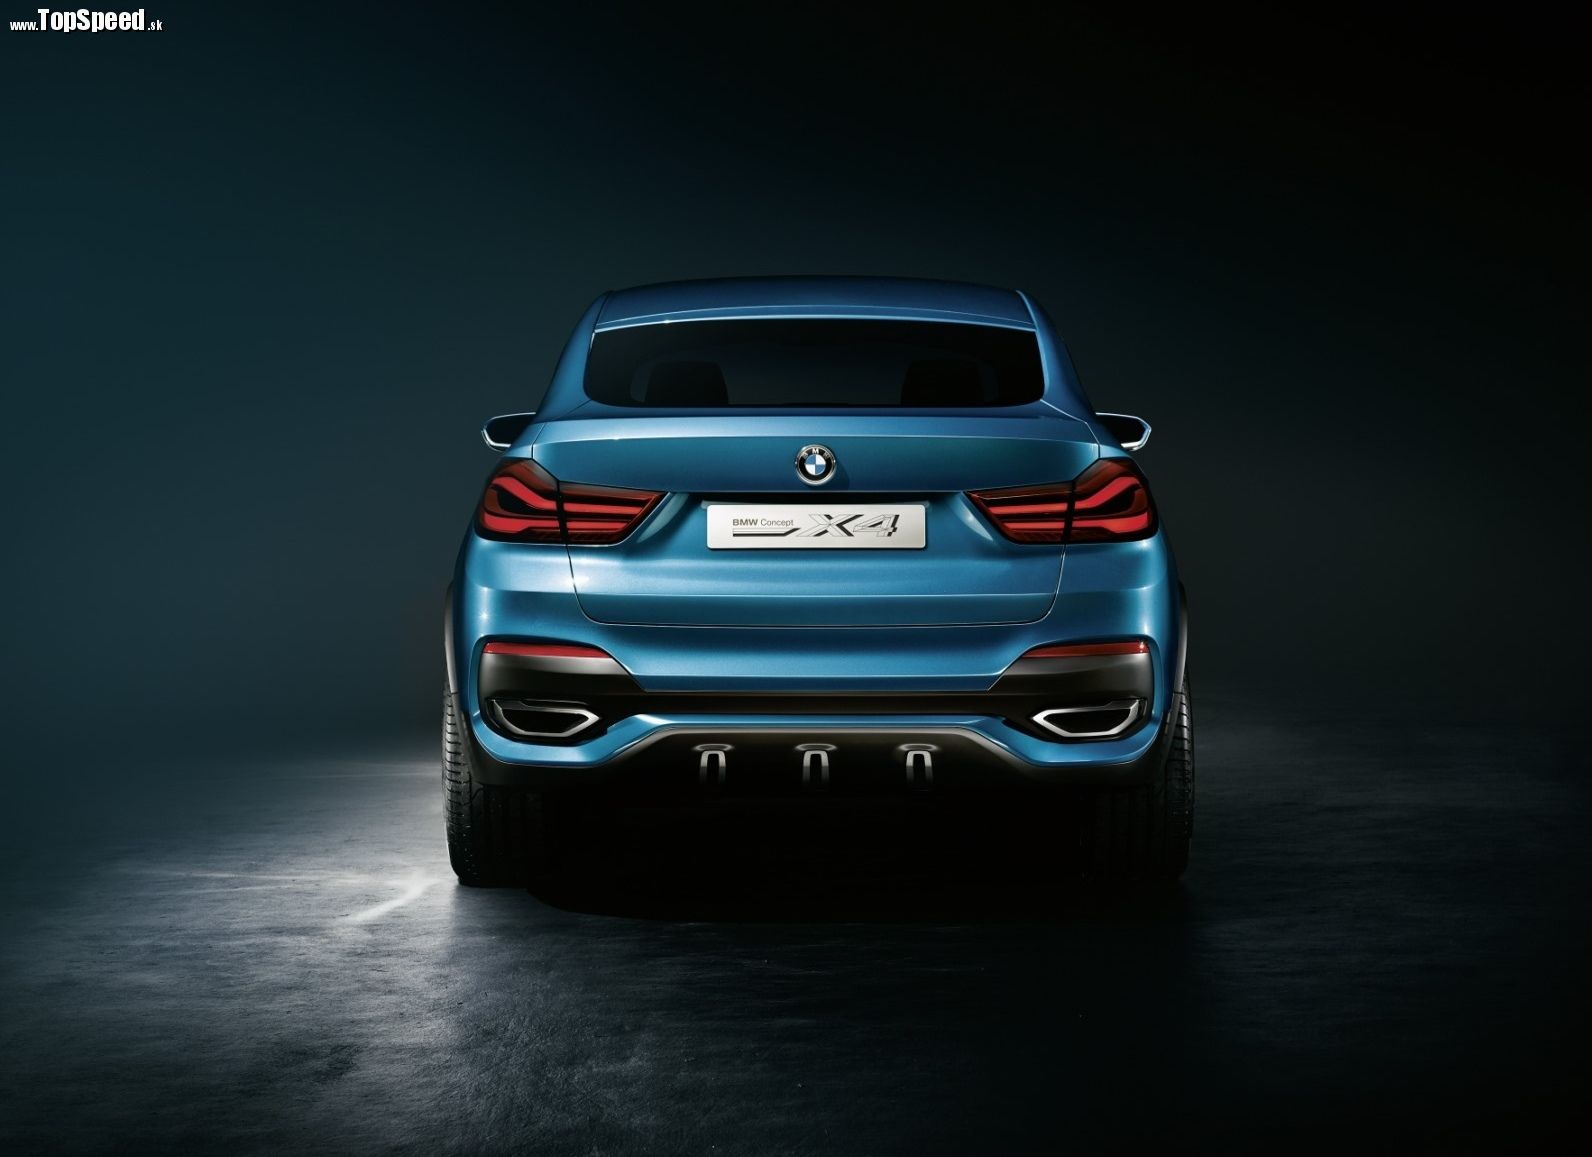 Zozadu je to nezameniteľné BMW. X4 Concept v sebe spája prvky BMW X6 a BMW 3GT.